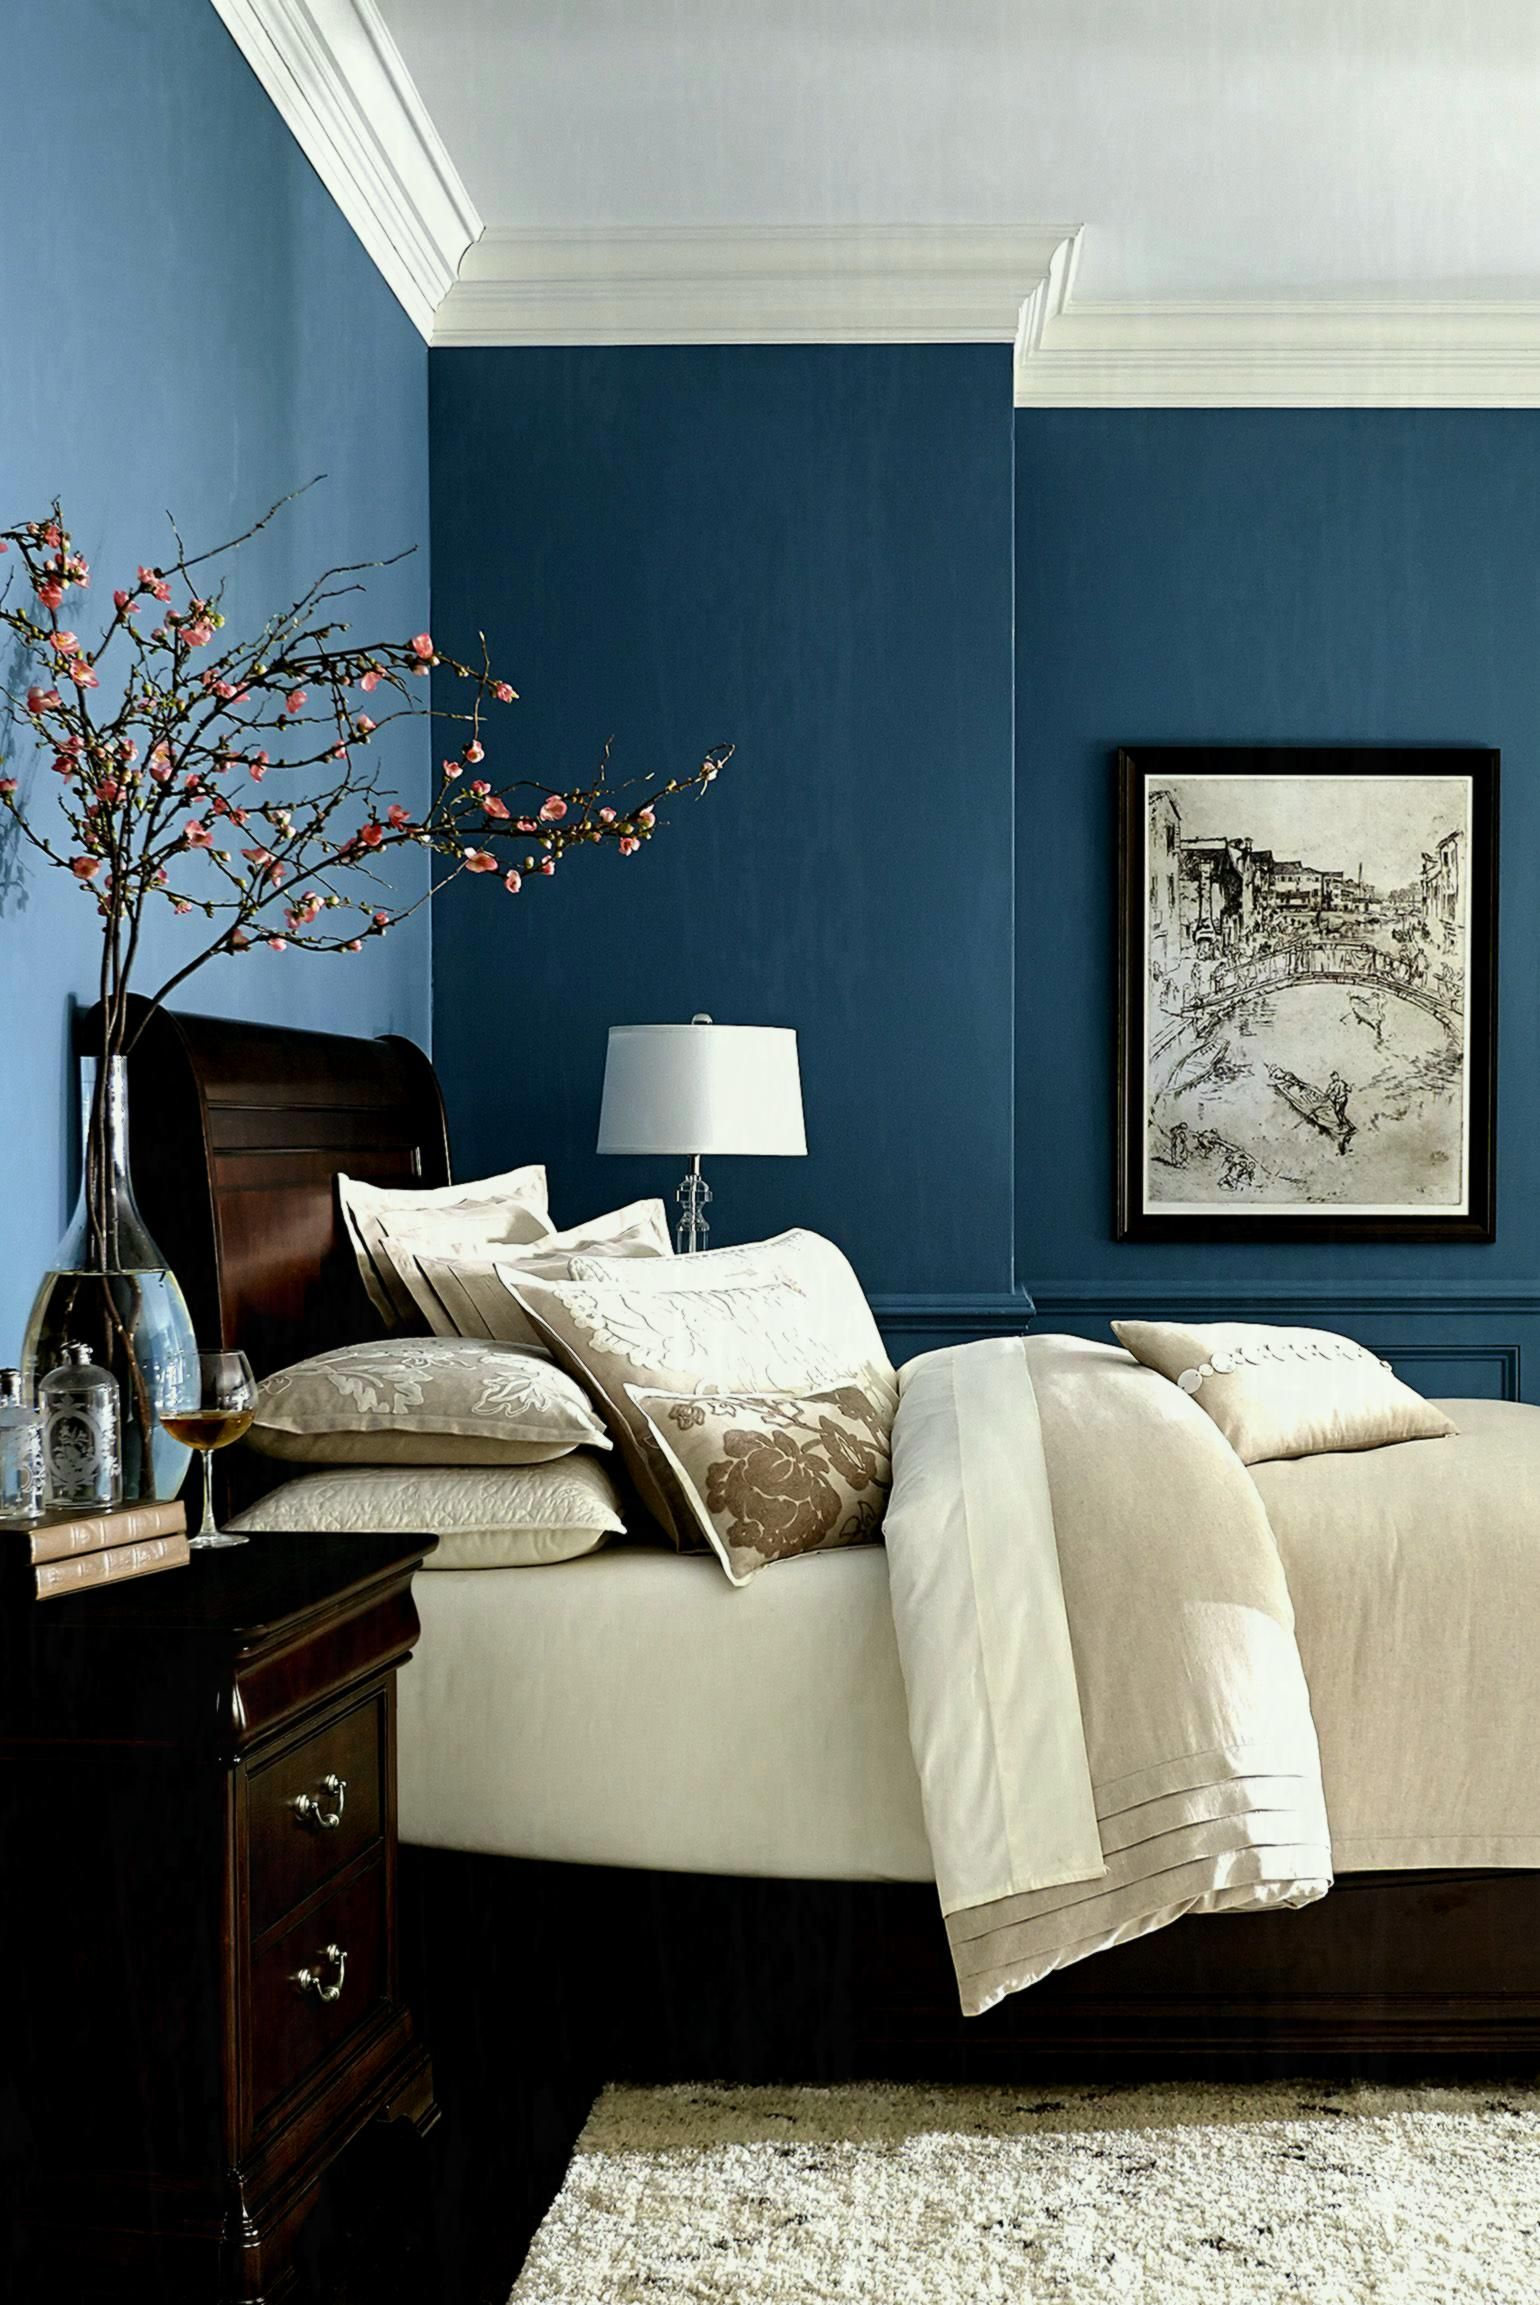 Bedroom Wall Color Schemes Interior Ideas On Design Zen Scheme Best inside measurements 1540 X 2305